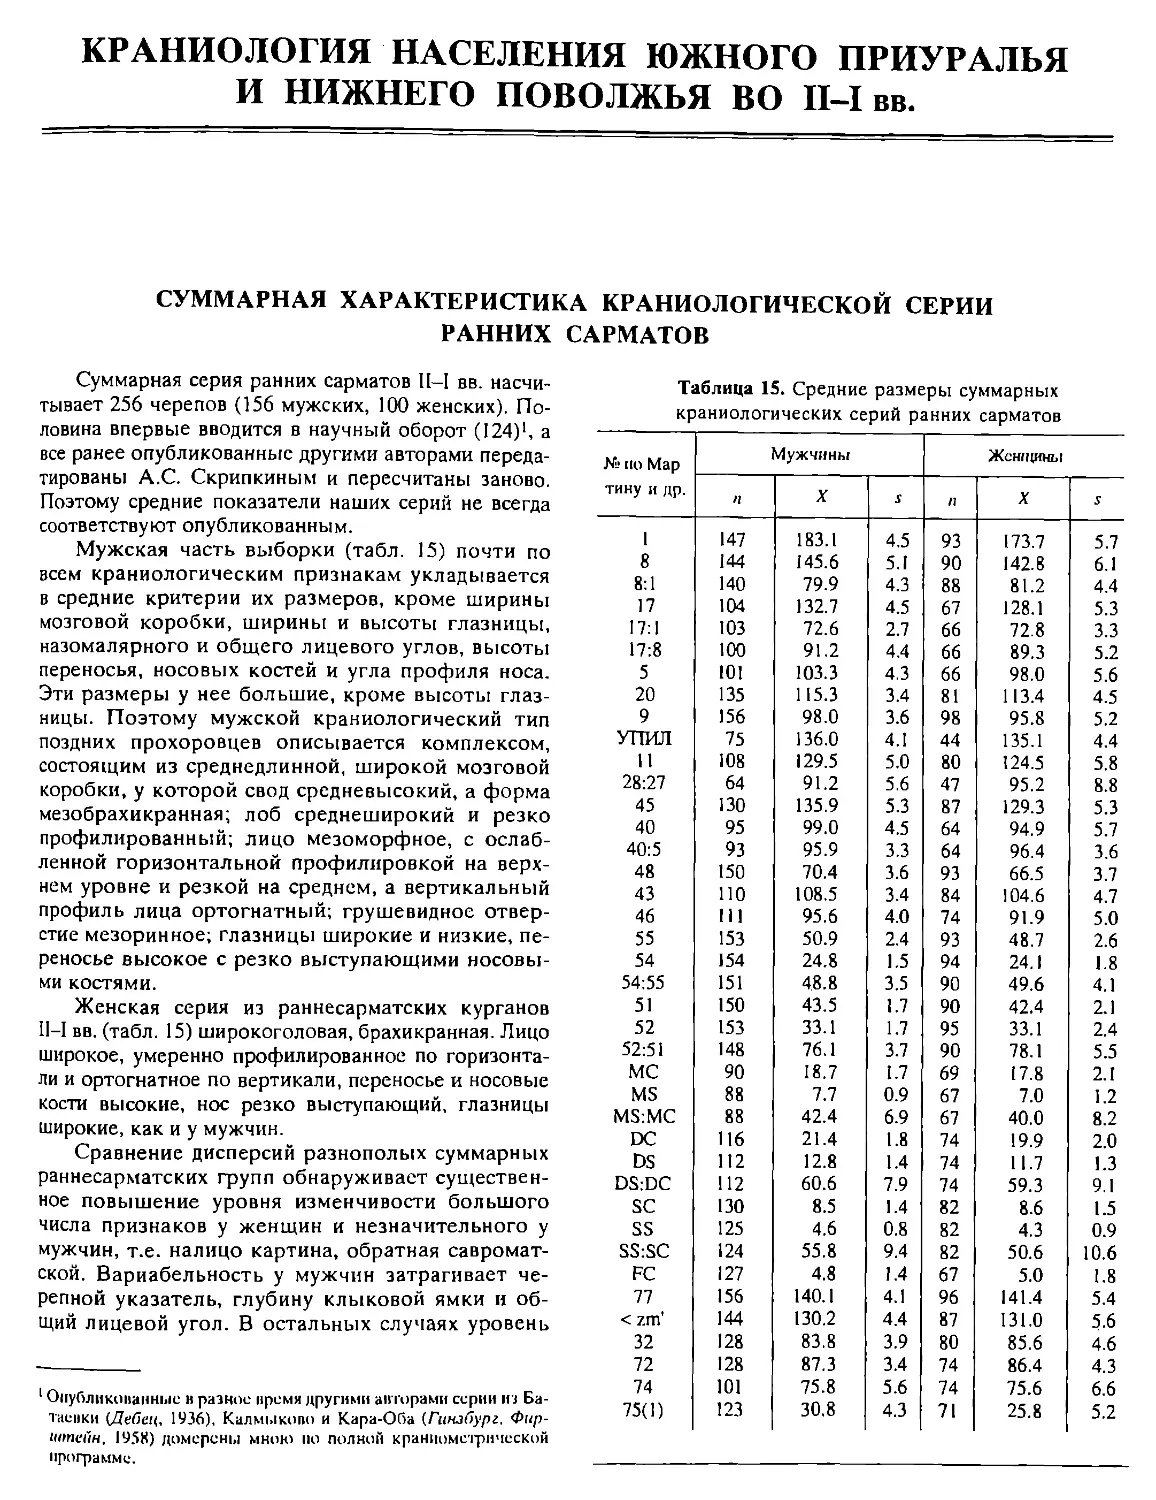 Краниология населения Южного Приуралья и Нижнего Поволжья во II-I вв.